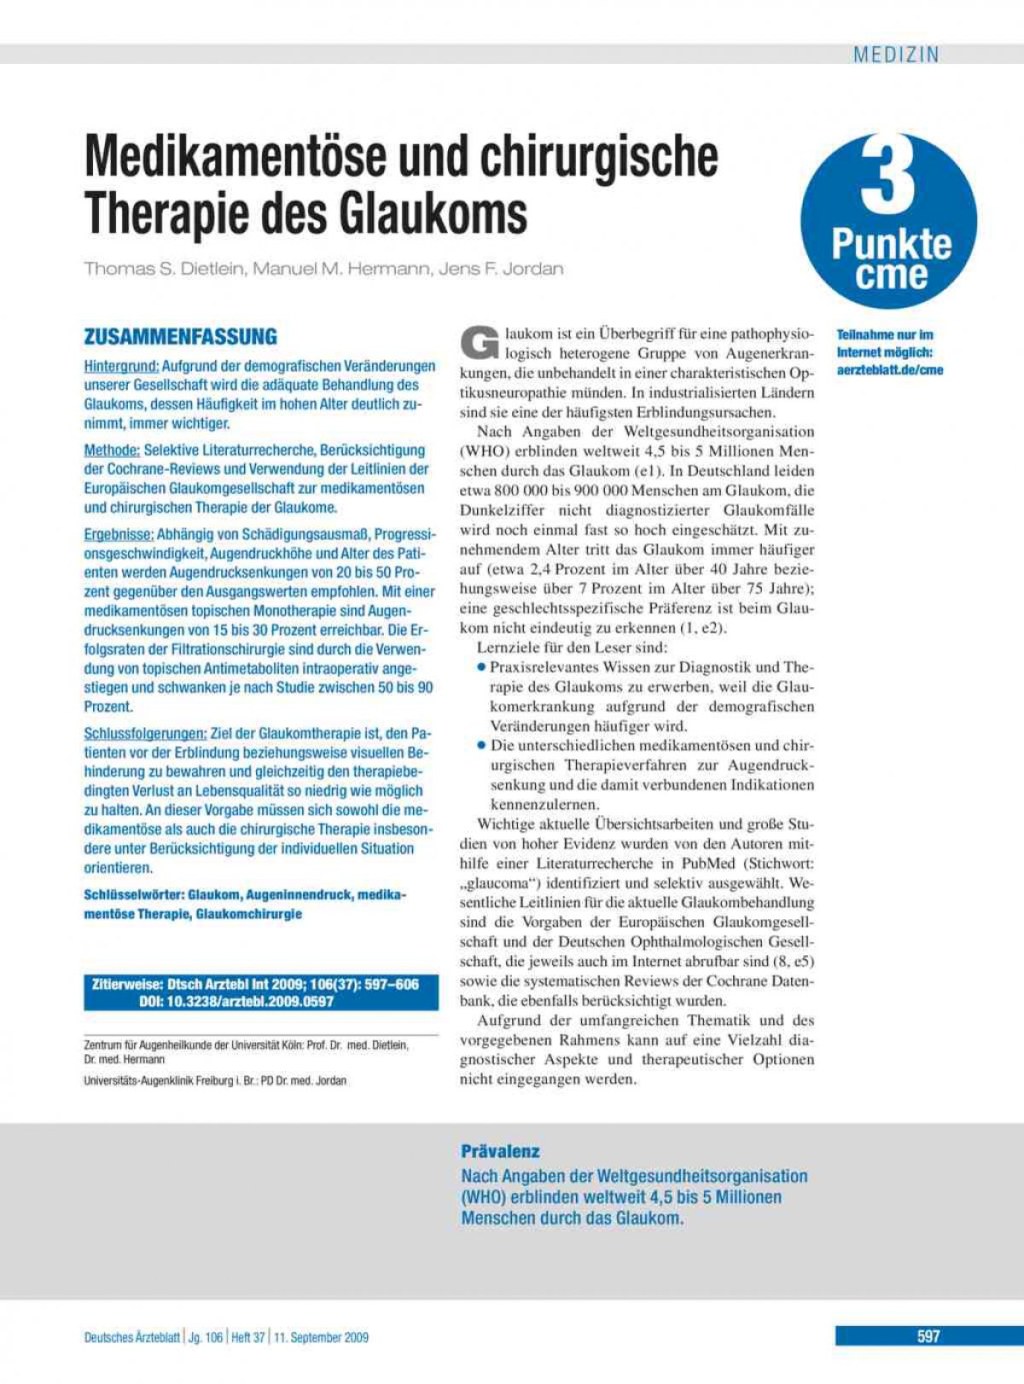 Picture of: Medikamentöse und chirurgische Therapie des Glaukoms